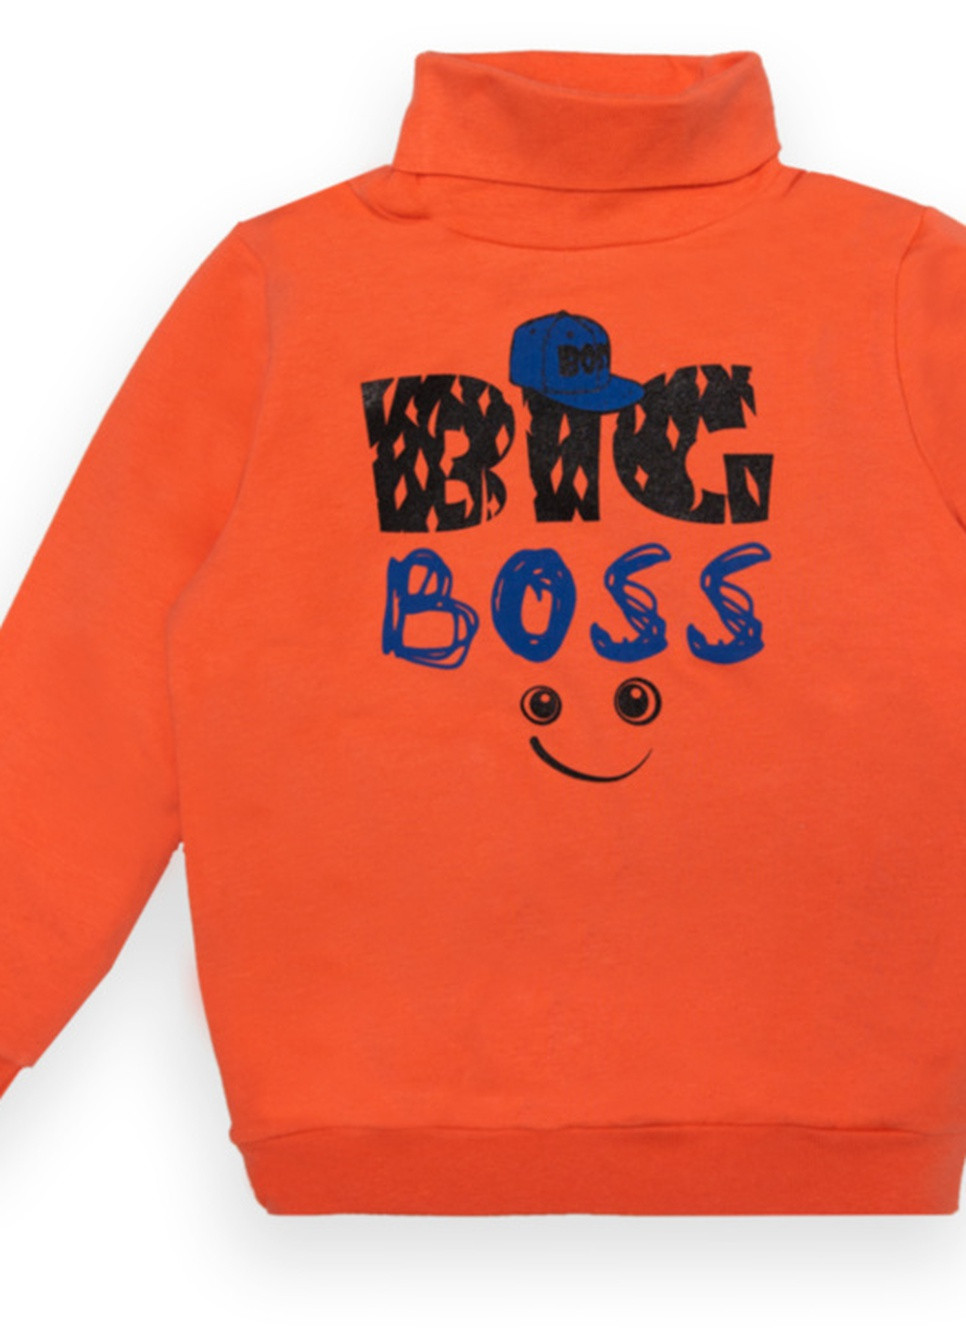 Оранжевый зимний детский свитер для мальчика sv-22-2-10 *big boss* Габби